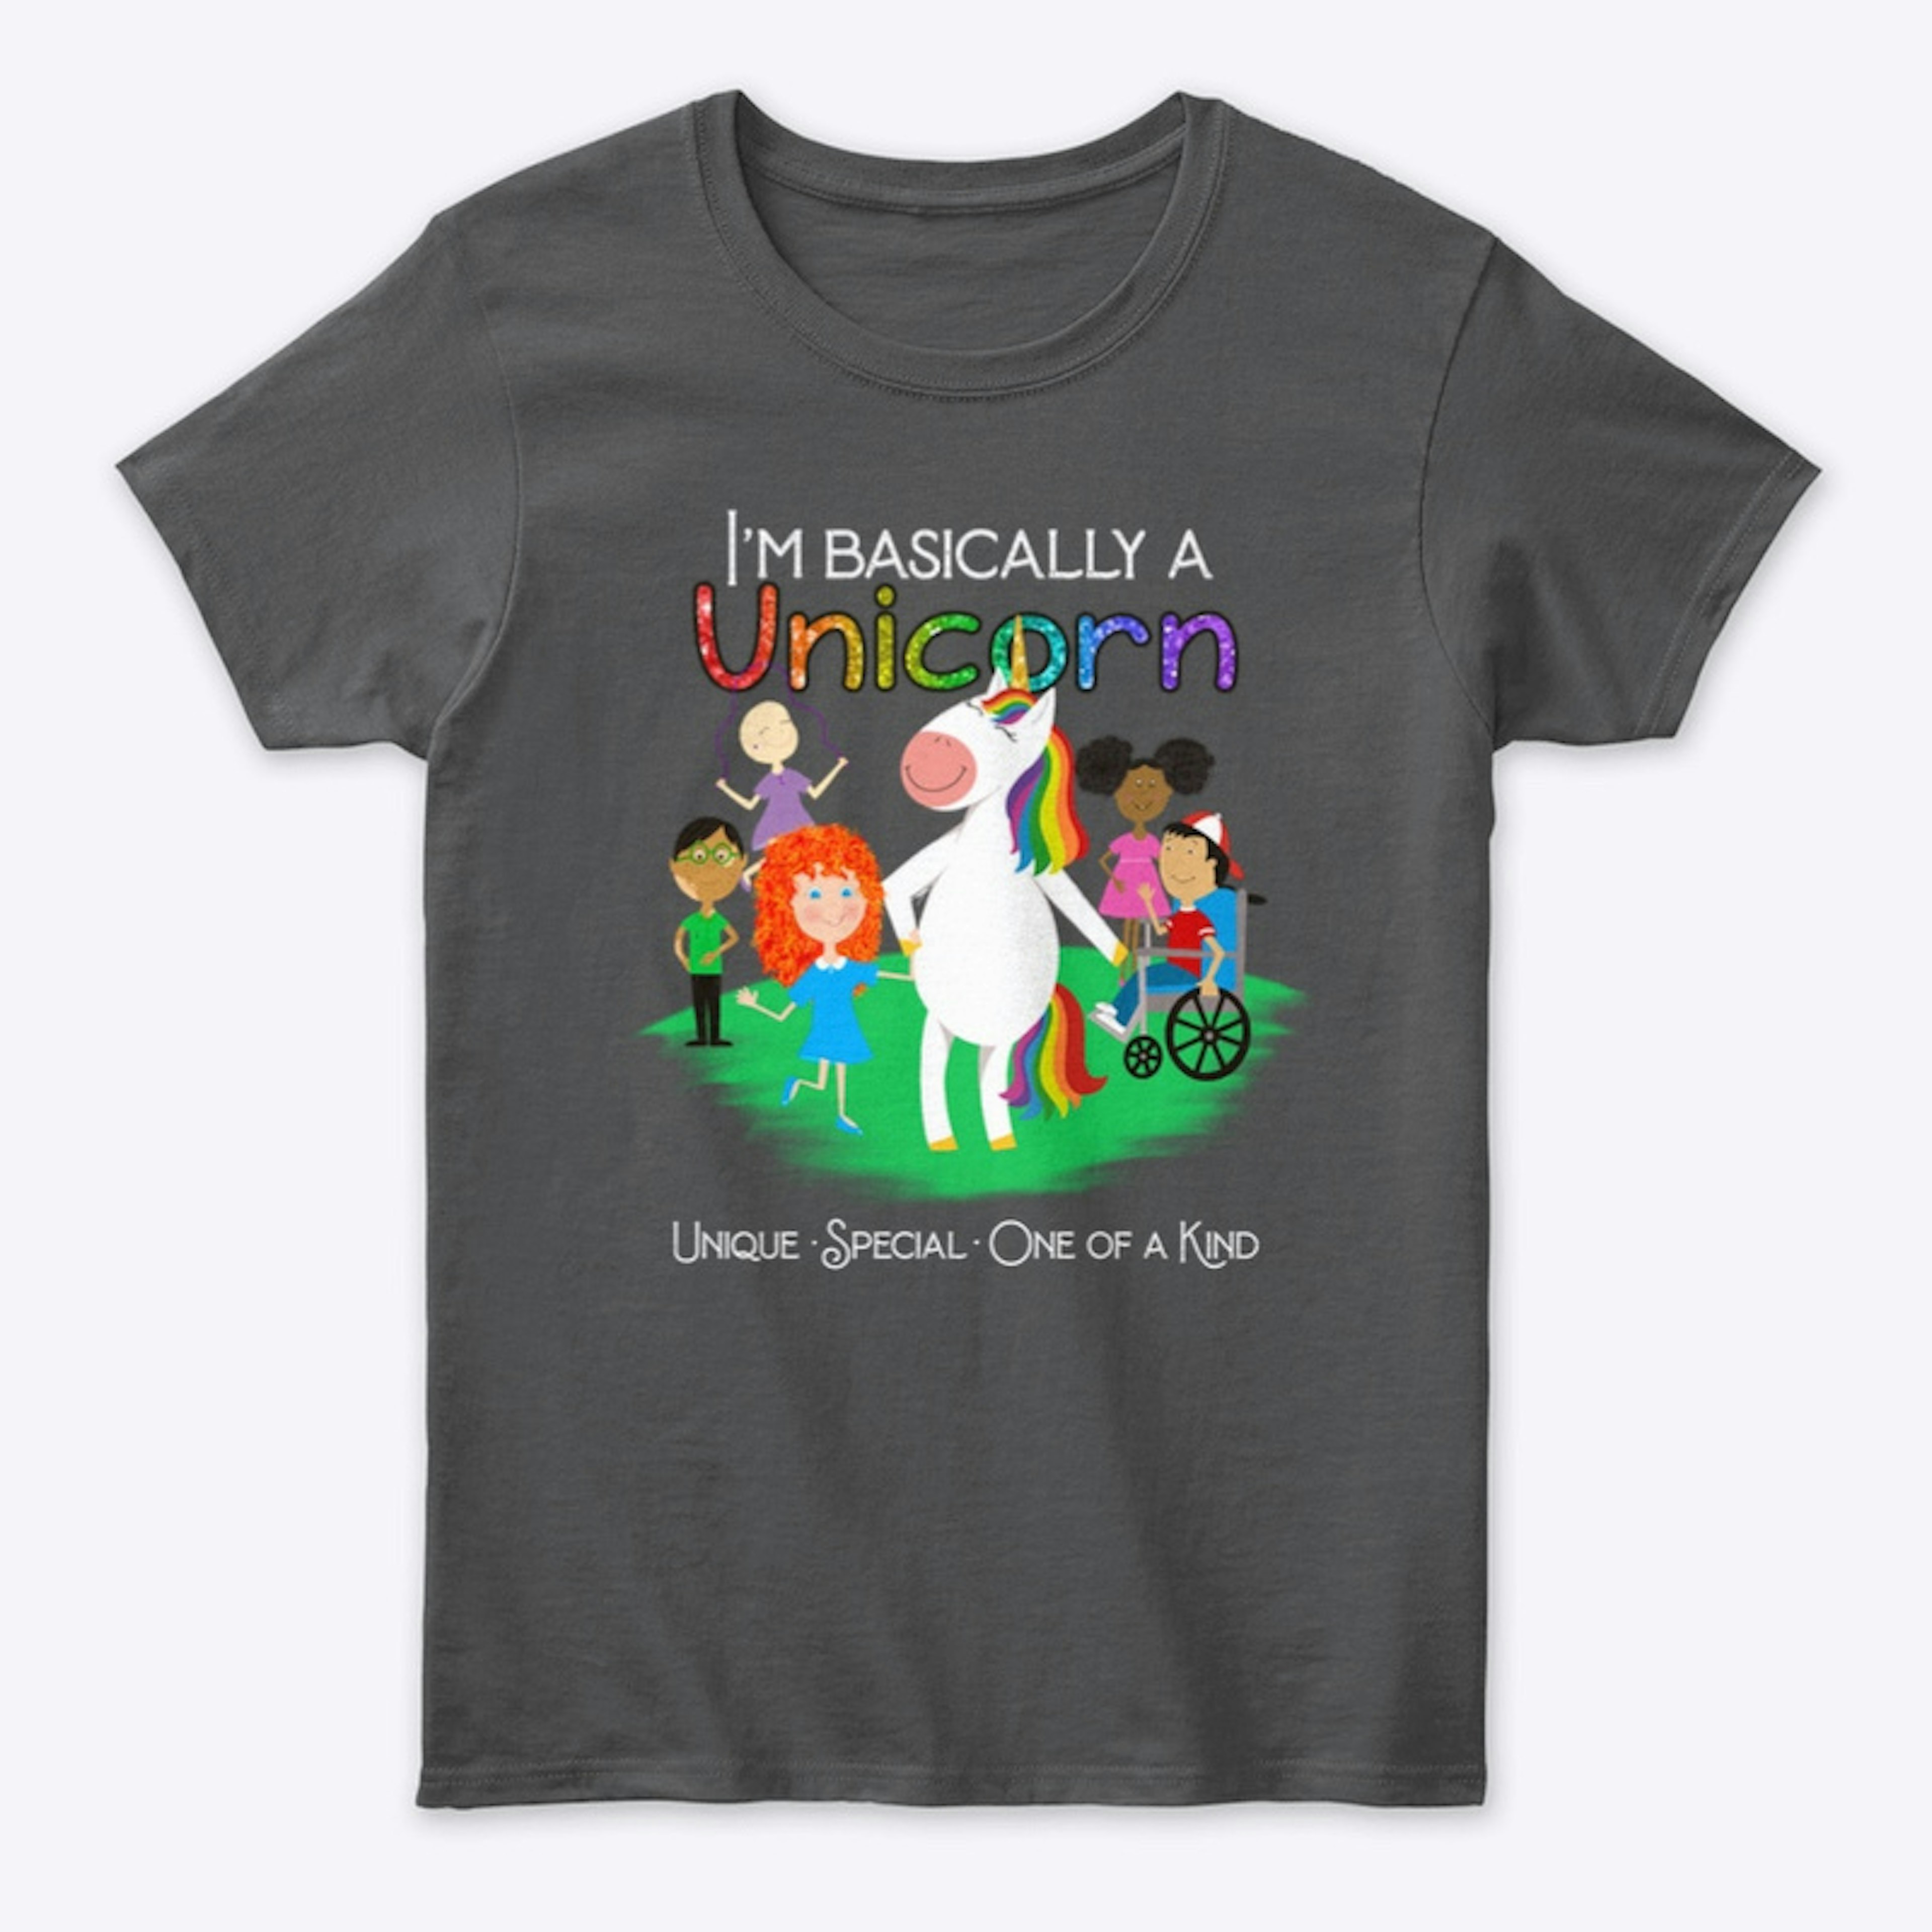 I’m Basically a Unicorn 